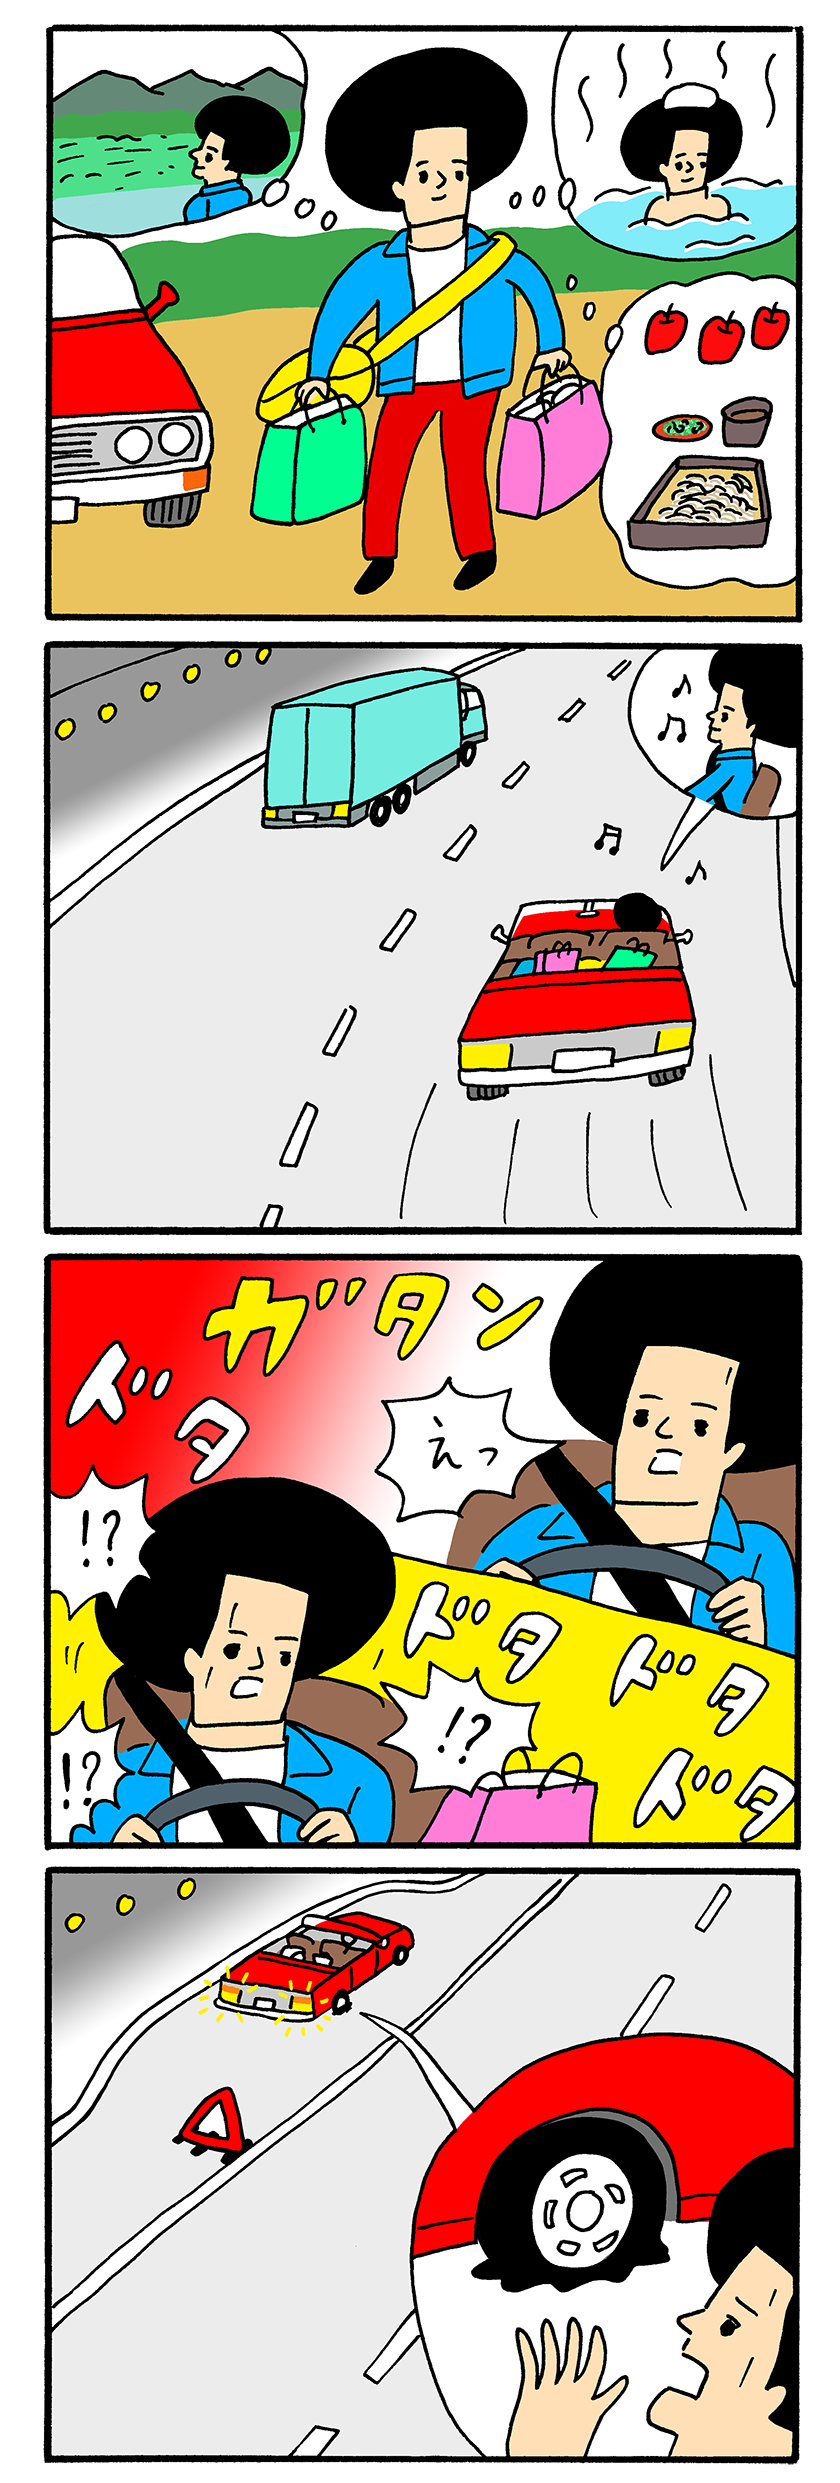 ４コマ漫画は埼玉県・三枝さんのエピソードを基に作成しました。